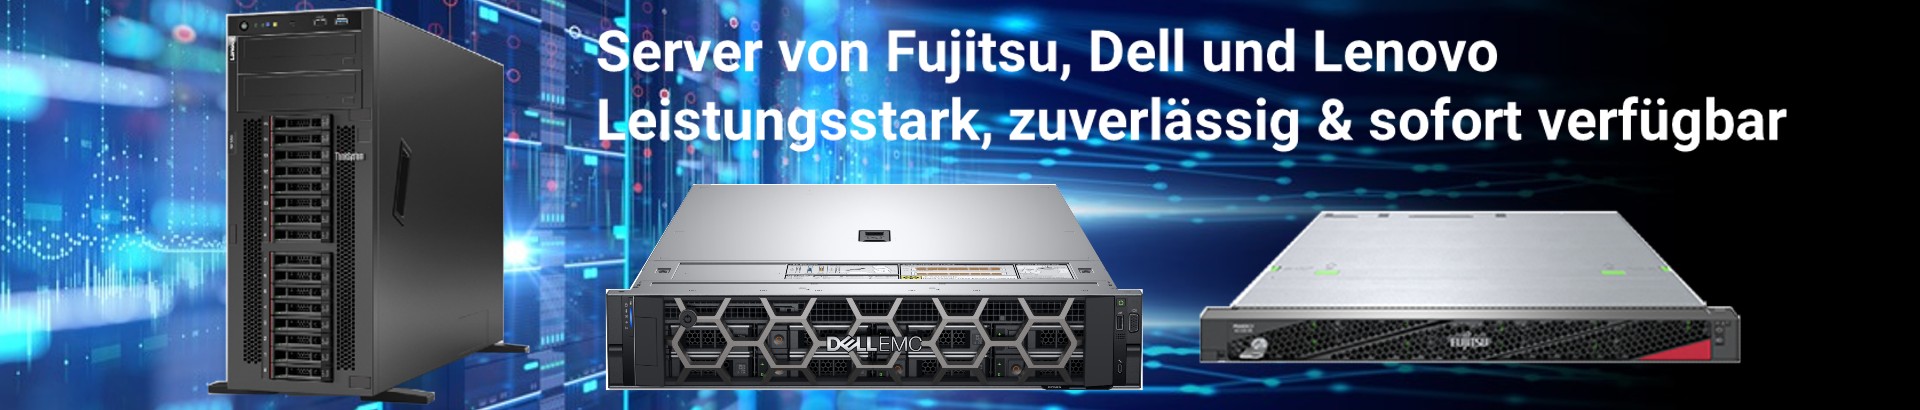 Server von Fujitsu, Dell und Lenovo Leistungsstark, zuverlässig & sofort verfügbar